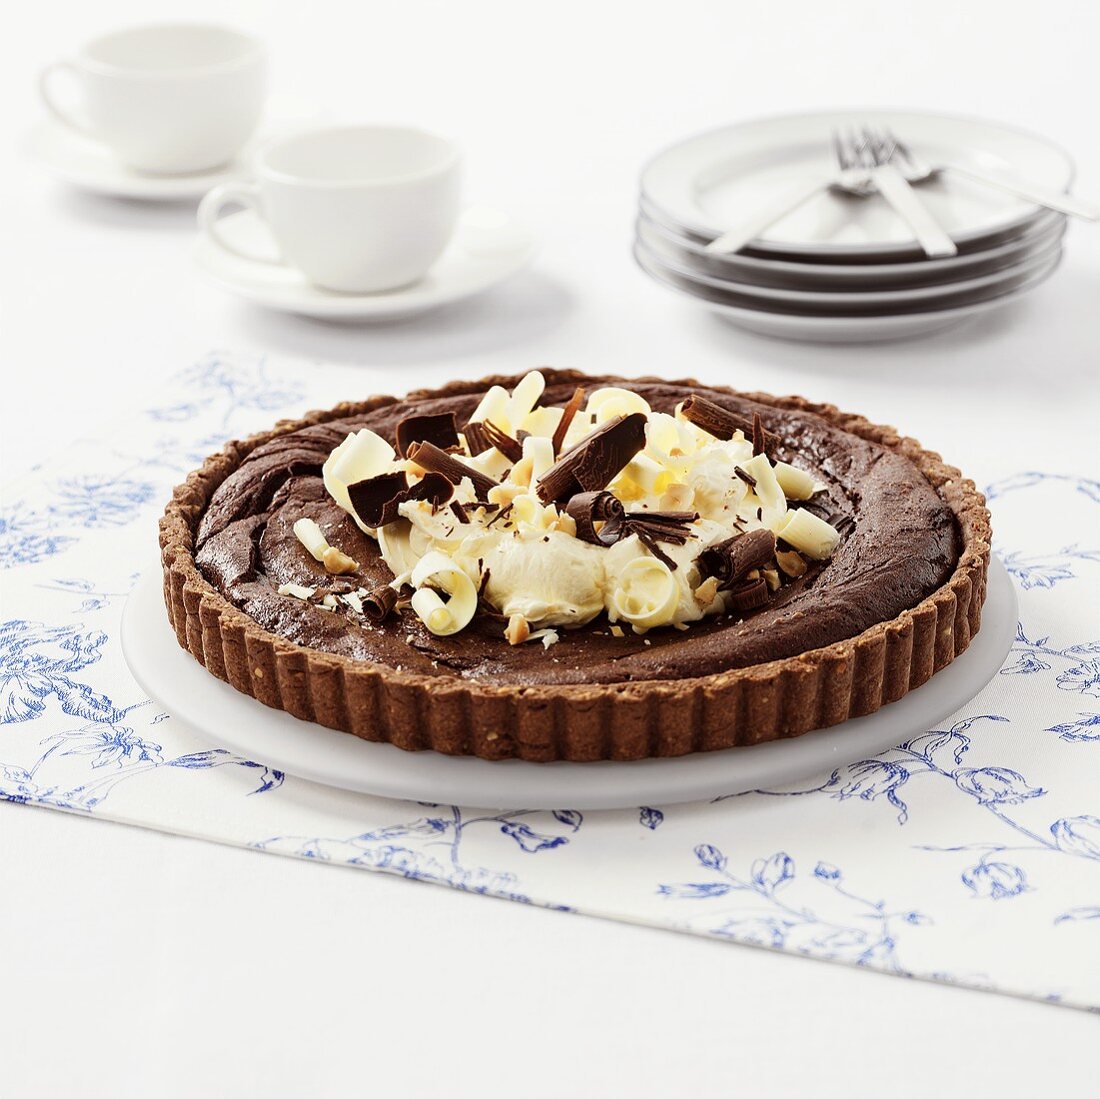 Chocolate tart with hazelnut base